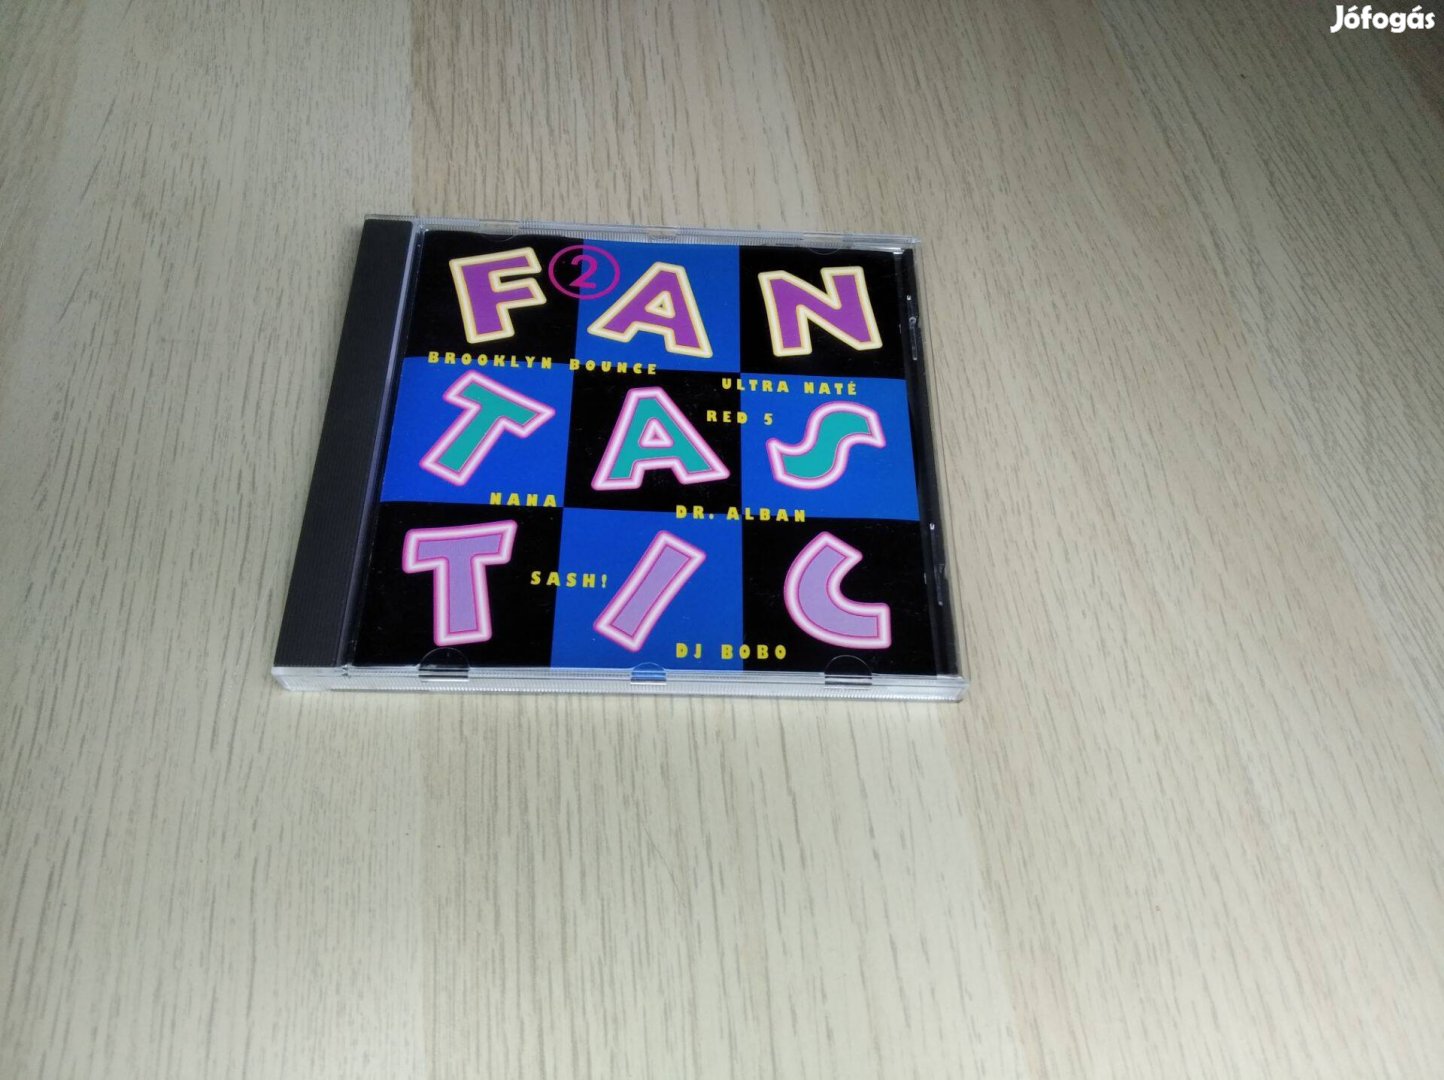 Fantastic 2 / CD 1997 (Record Express )